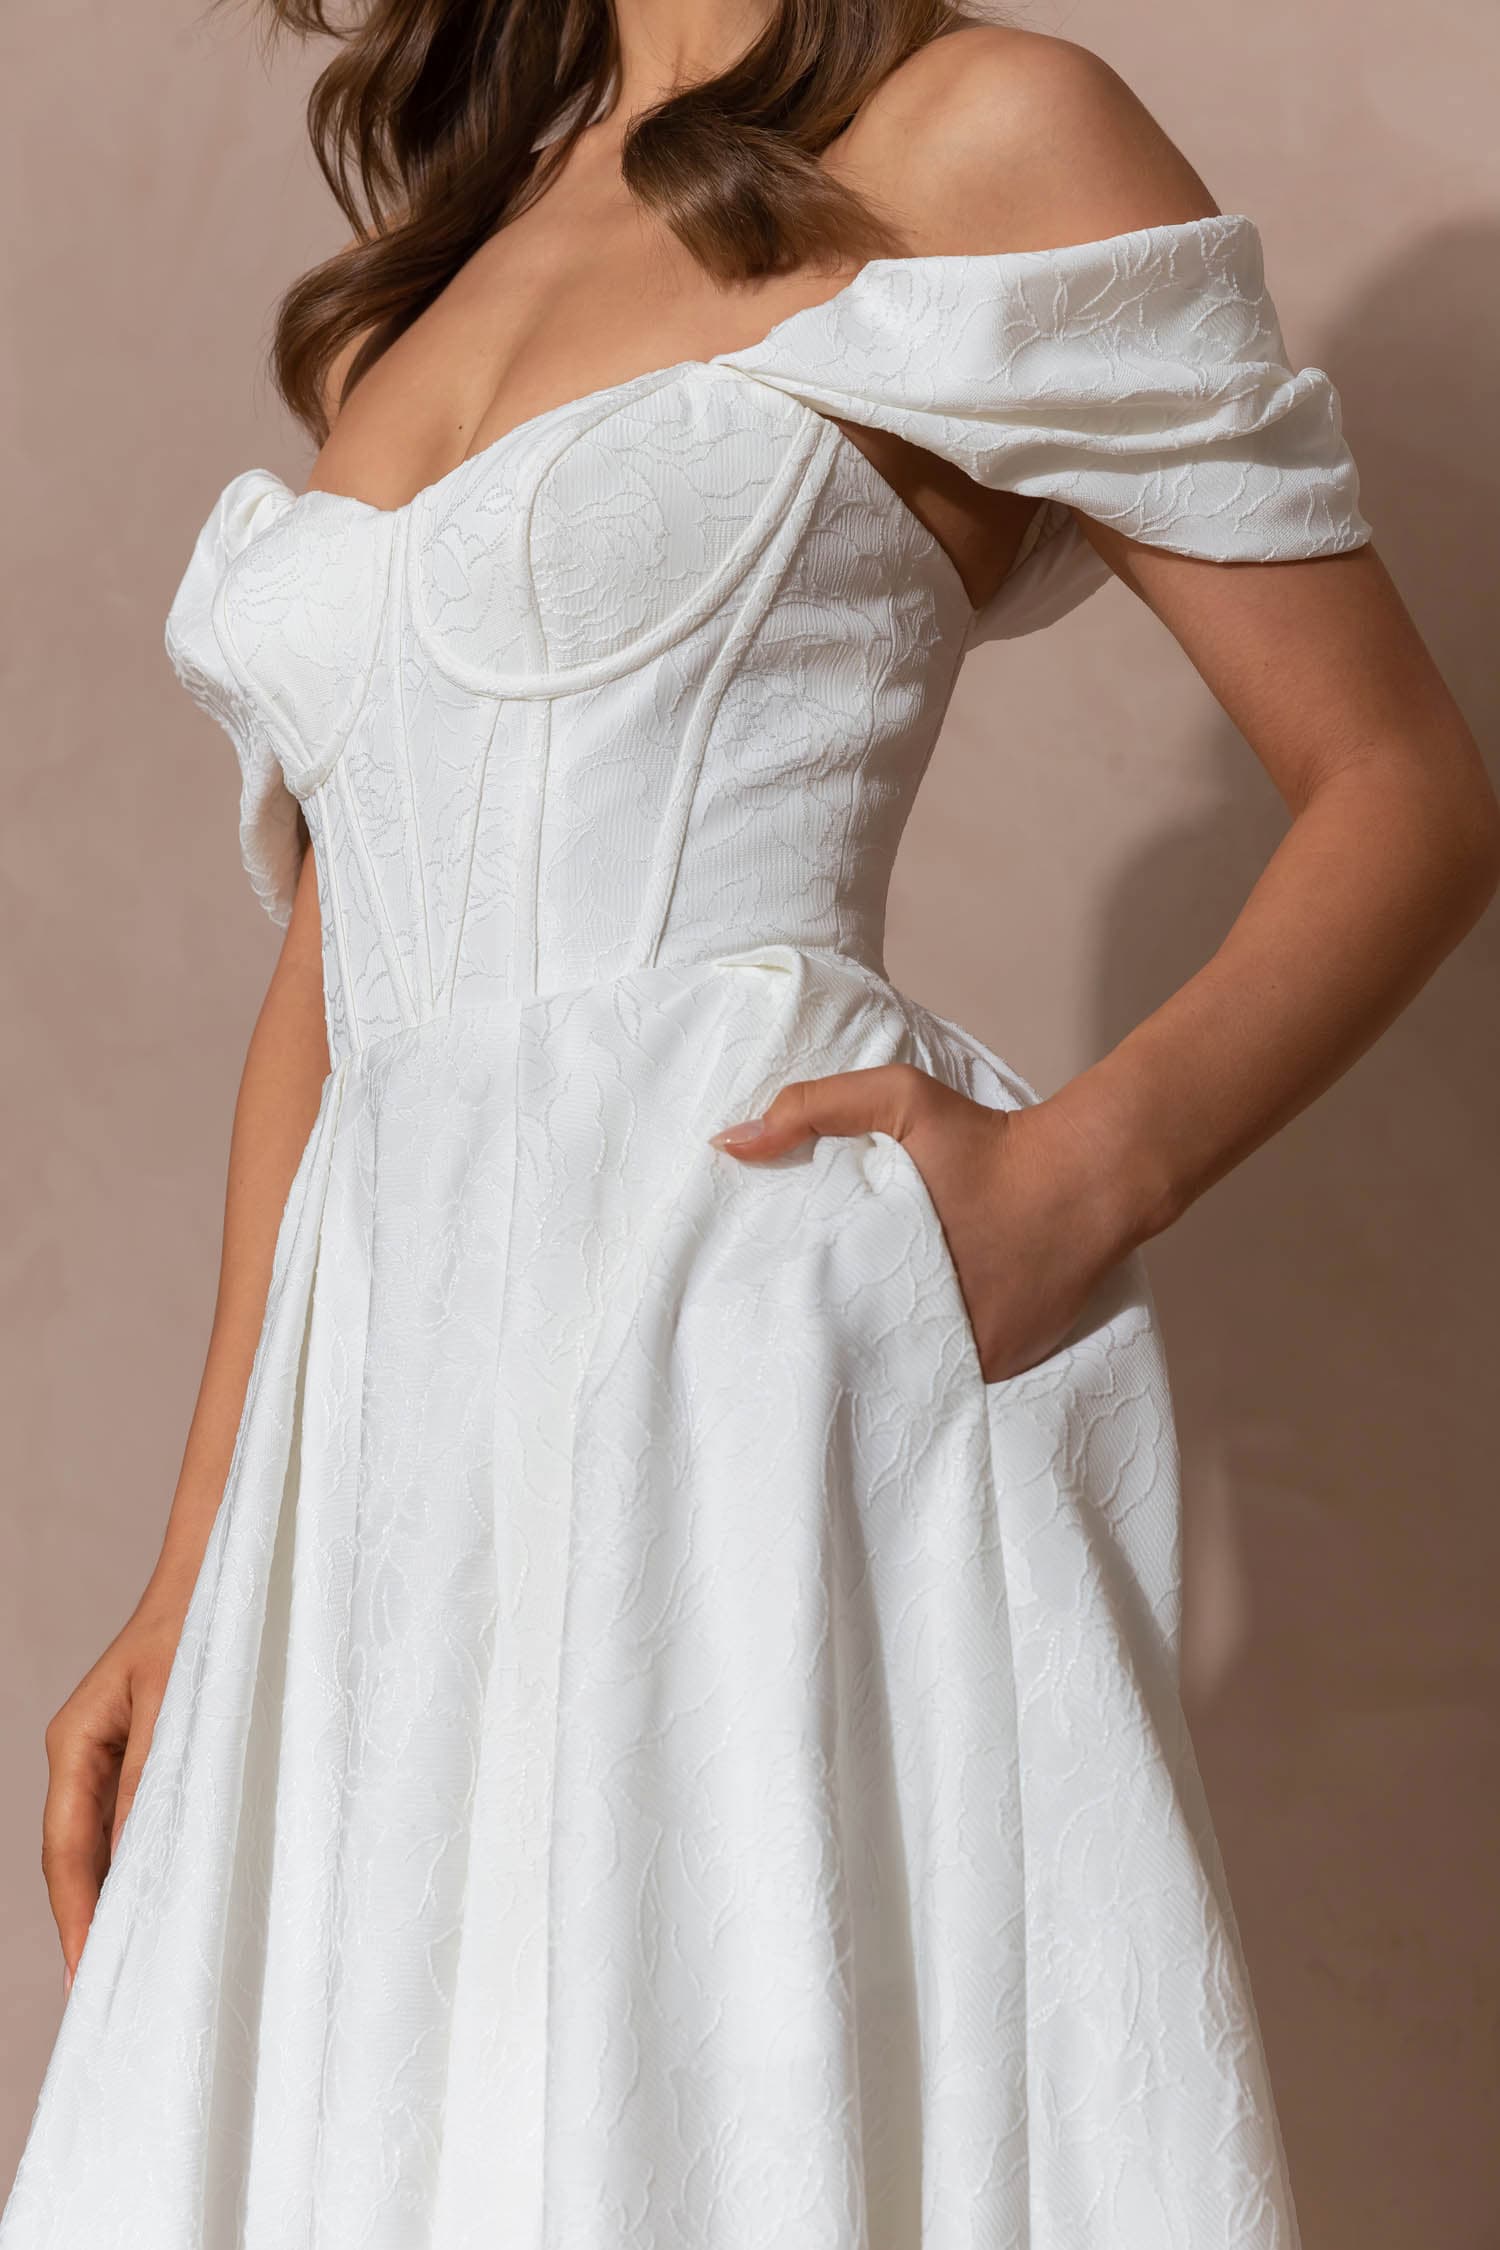 Frau in hochgeschlossenem Brautkleid aus fließendem Crepe Stoff mit Taillenband mit Schleife